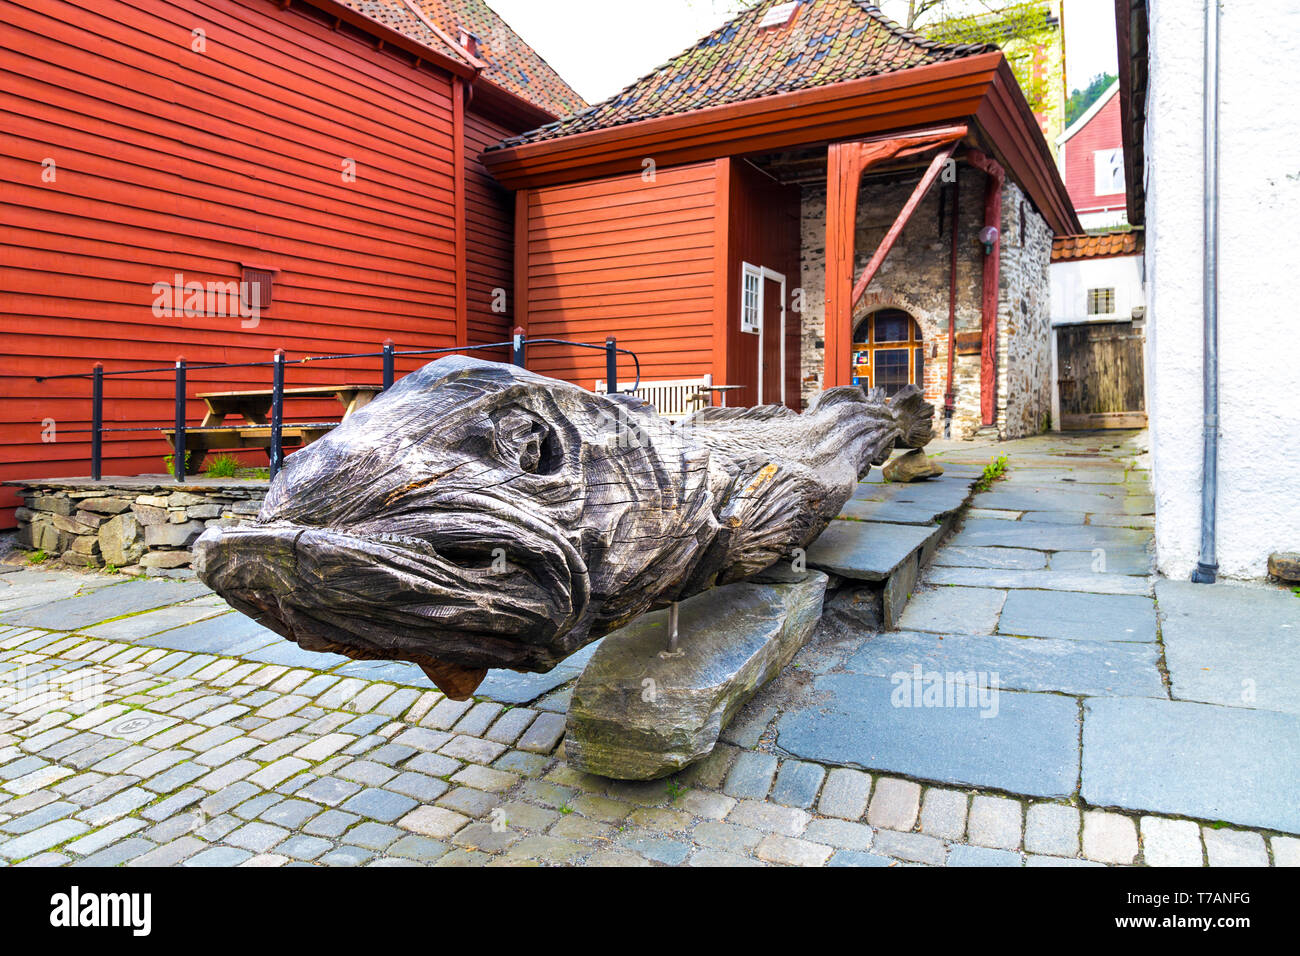 Escultura de madera tallada de un bacalao en la histórica zona hanseática de Bryggen, Bergen, Noruega Foto de stock